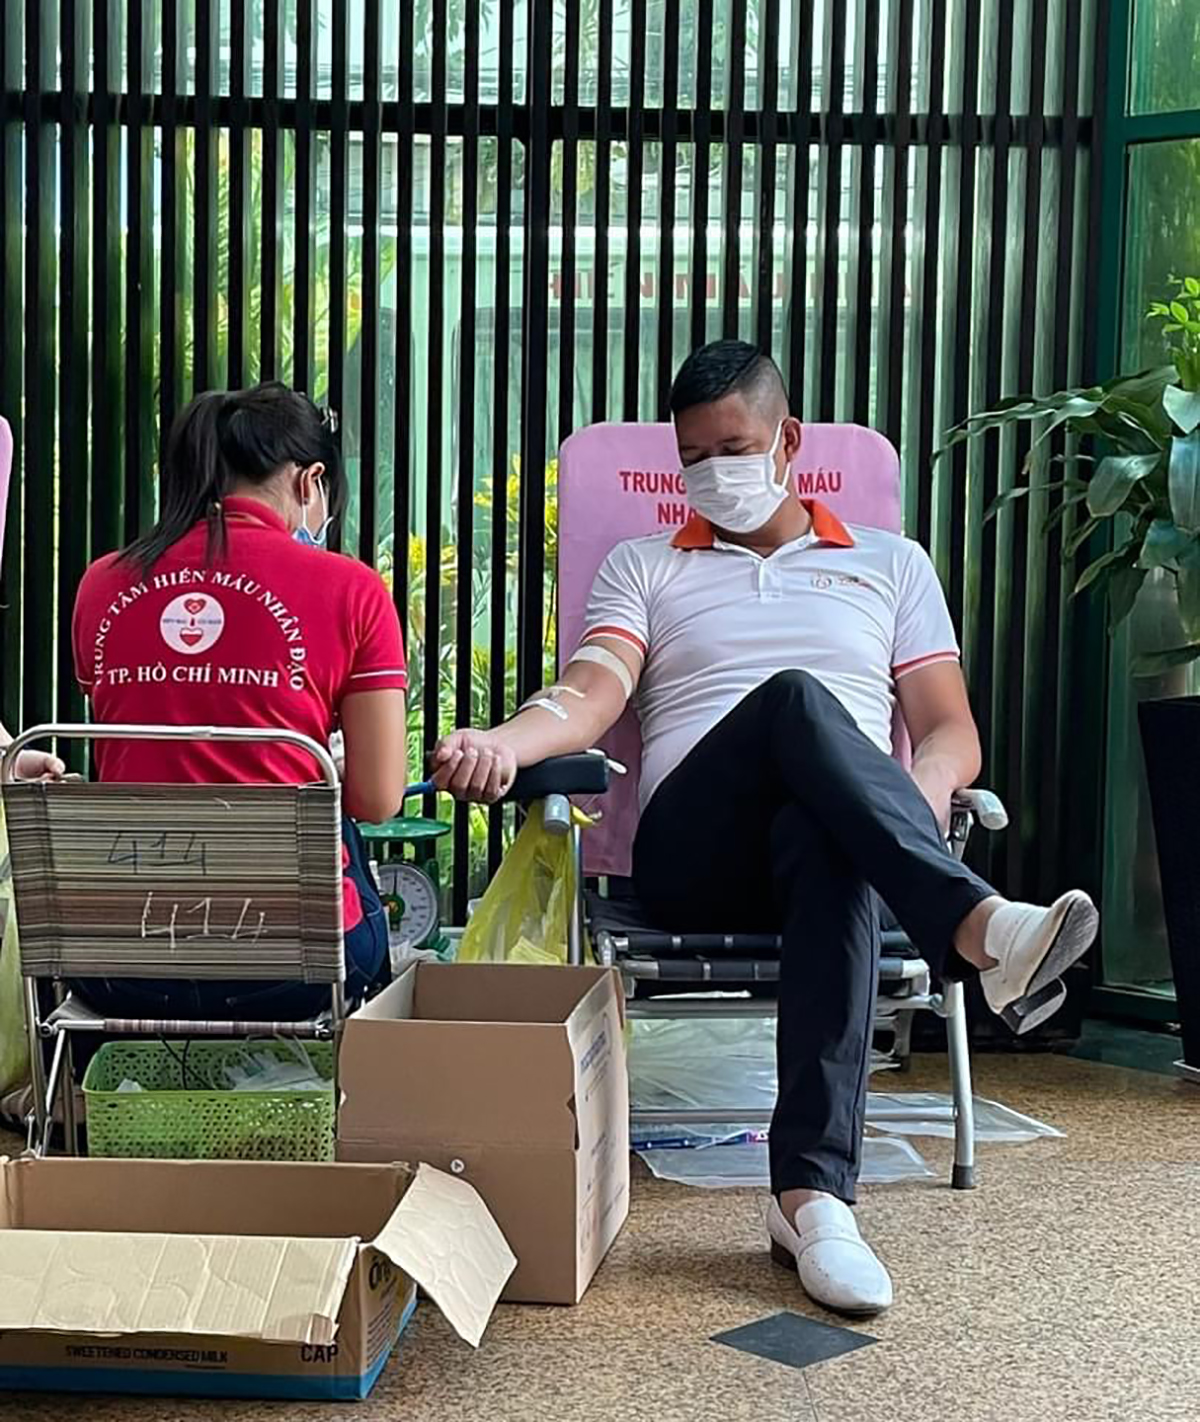 Diễn viên Bình Minh lần đầu tiên tham gia hiến máu nhân đạo tại PNJ và bày tỏ sự tin tưởng trước công tác chuẩn bị chu đáo an toàn từ BTC